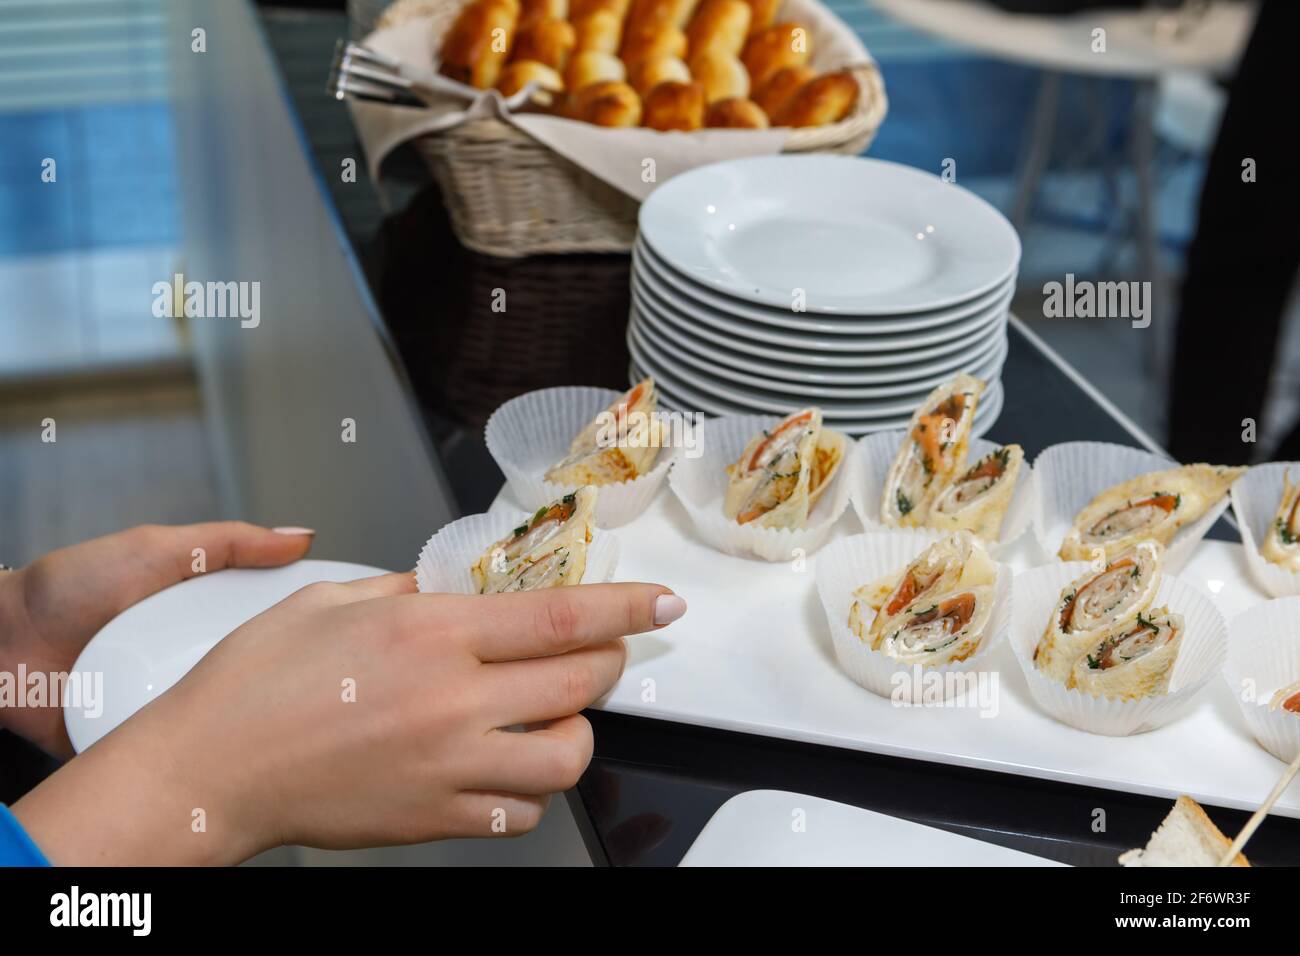 Ein Mann nimmt gefüllte Pfannkuchen auf einer Platte in Pappbechern. Festliche Tischeinstellung. Stockfoto